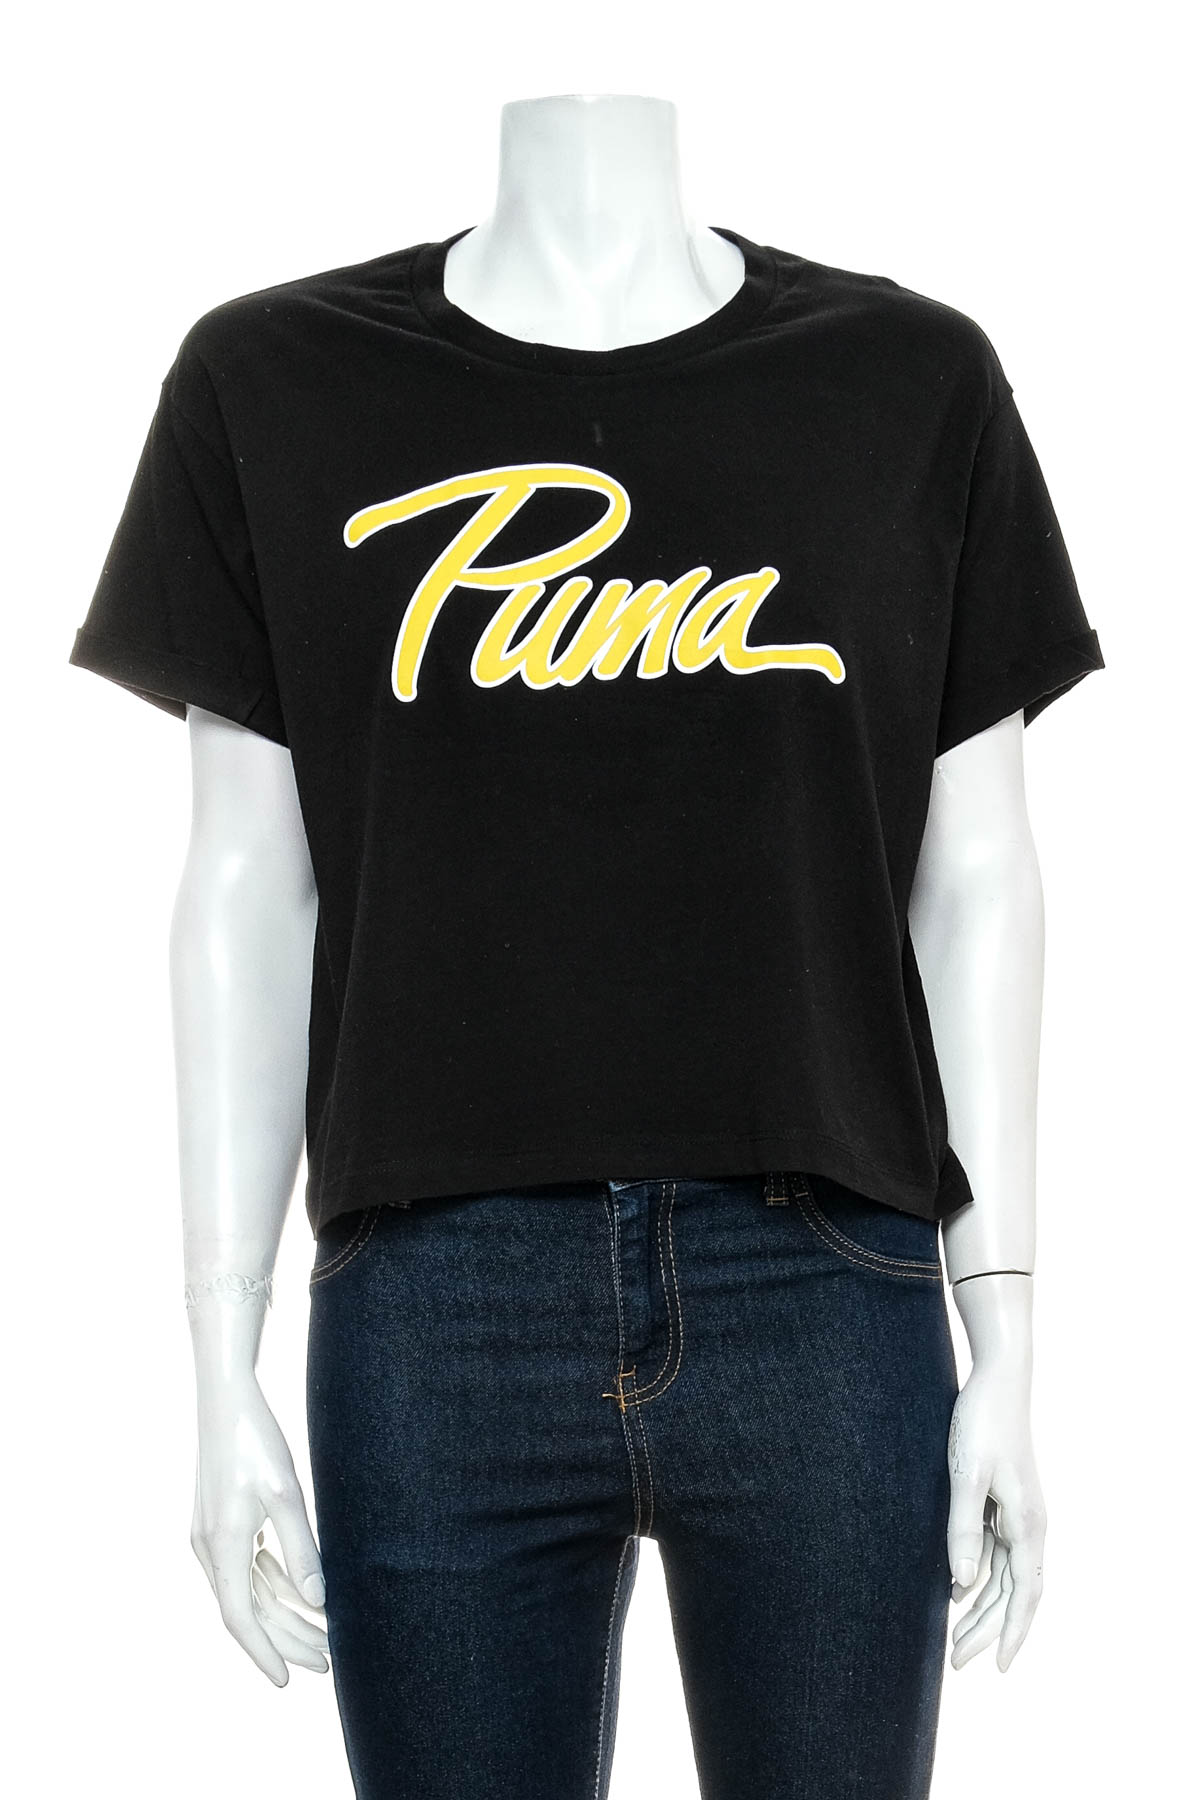 Γυναικεία μπλούζα - Puma - 0